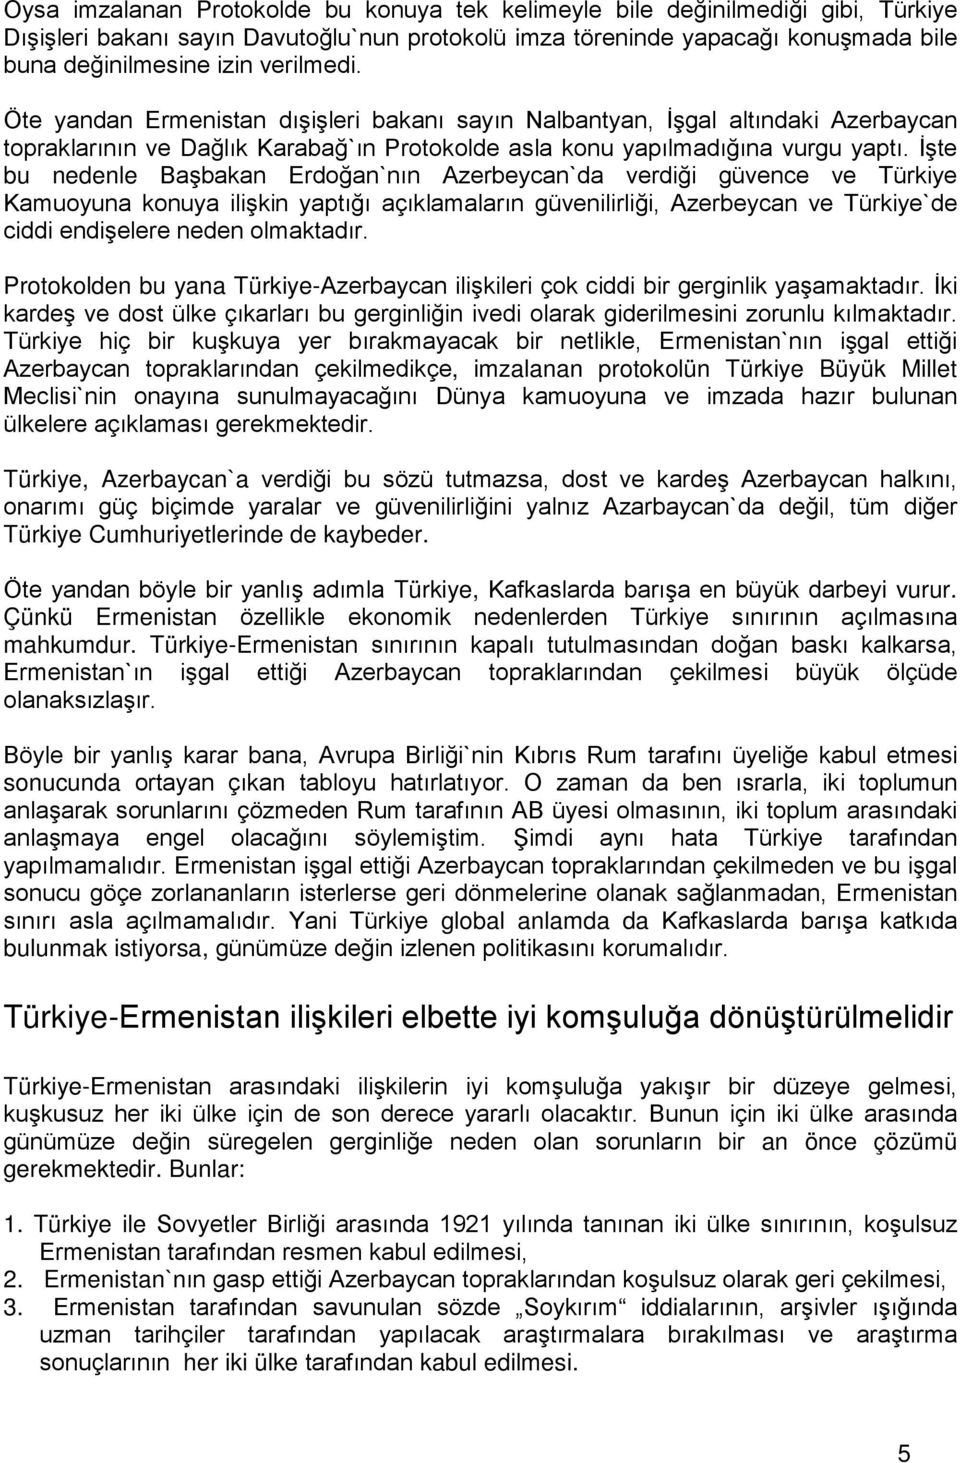 İşte bu nedenle Başbakan Erdoğan`nın Azerbeycan`da verdiği güvence ve Türkiye Kamuoyuna konuya ilişkin yaptığı açıklamaların güvenilirliği, Azerbeycan ve Türkiye`de ciddi endişelere neden olmaktadır.